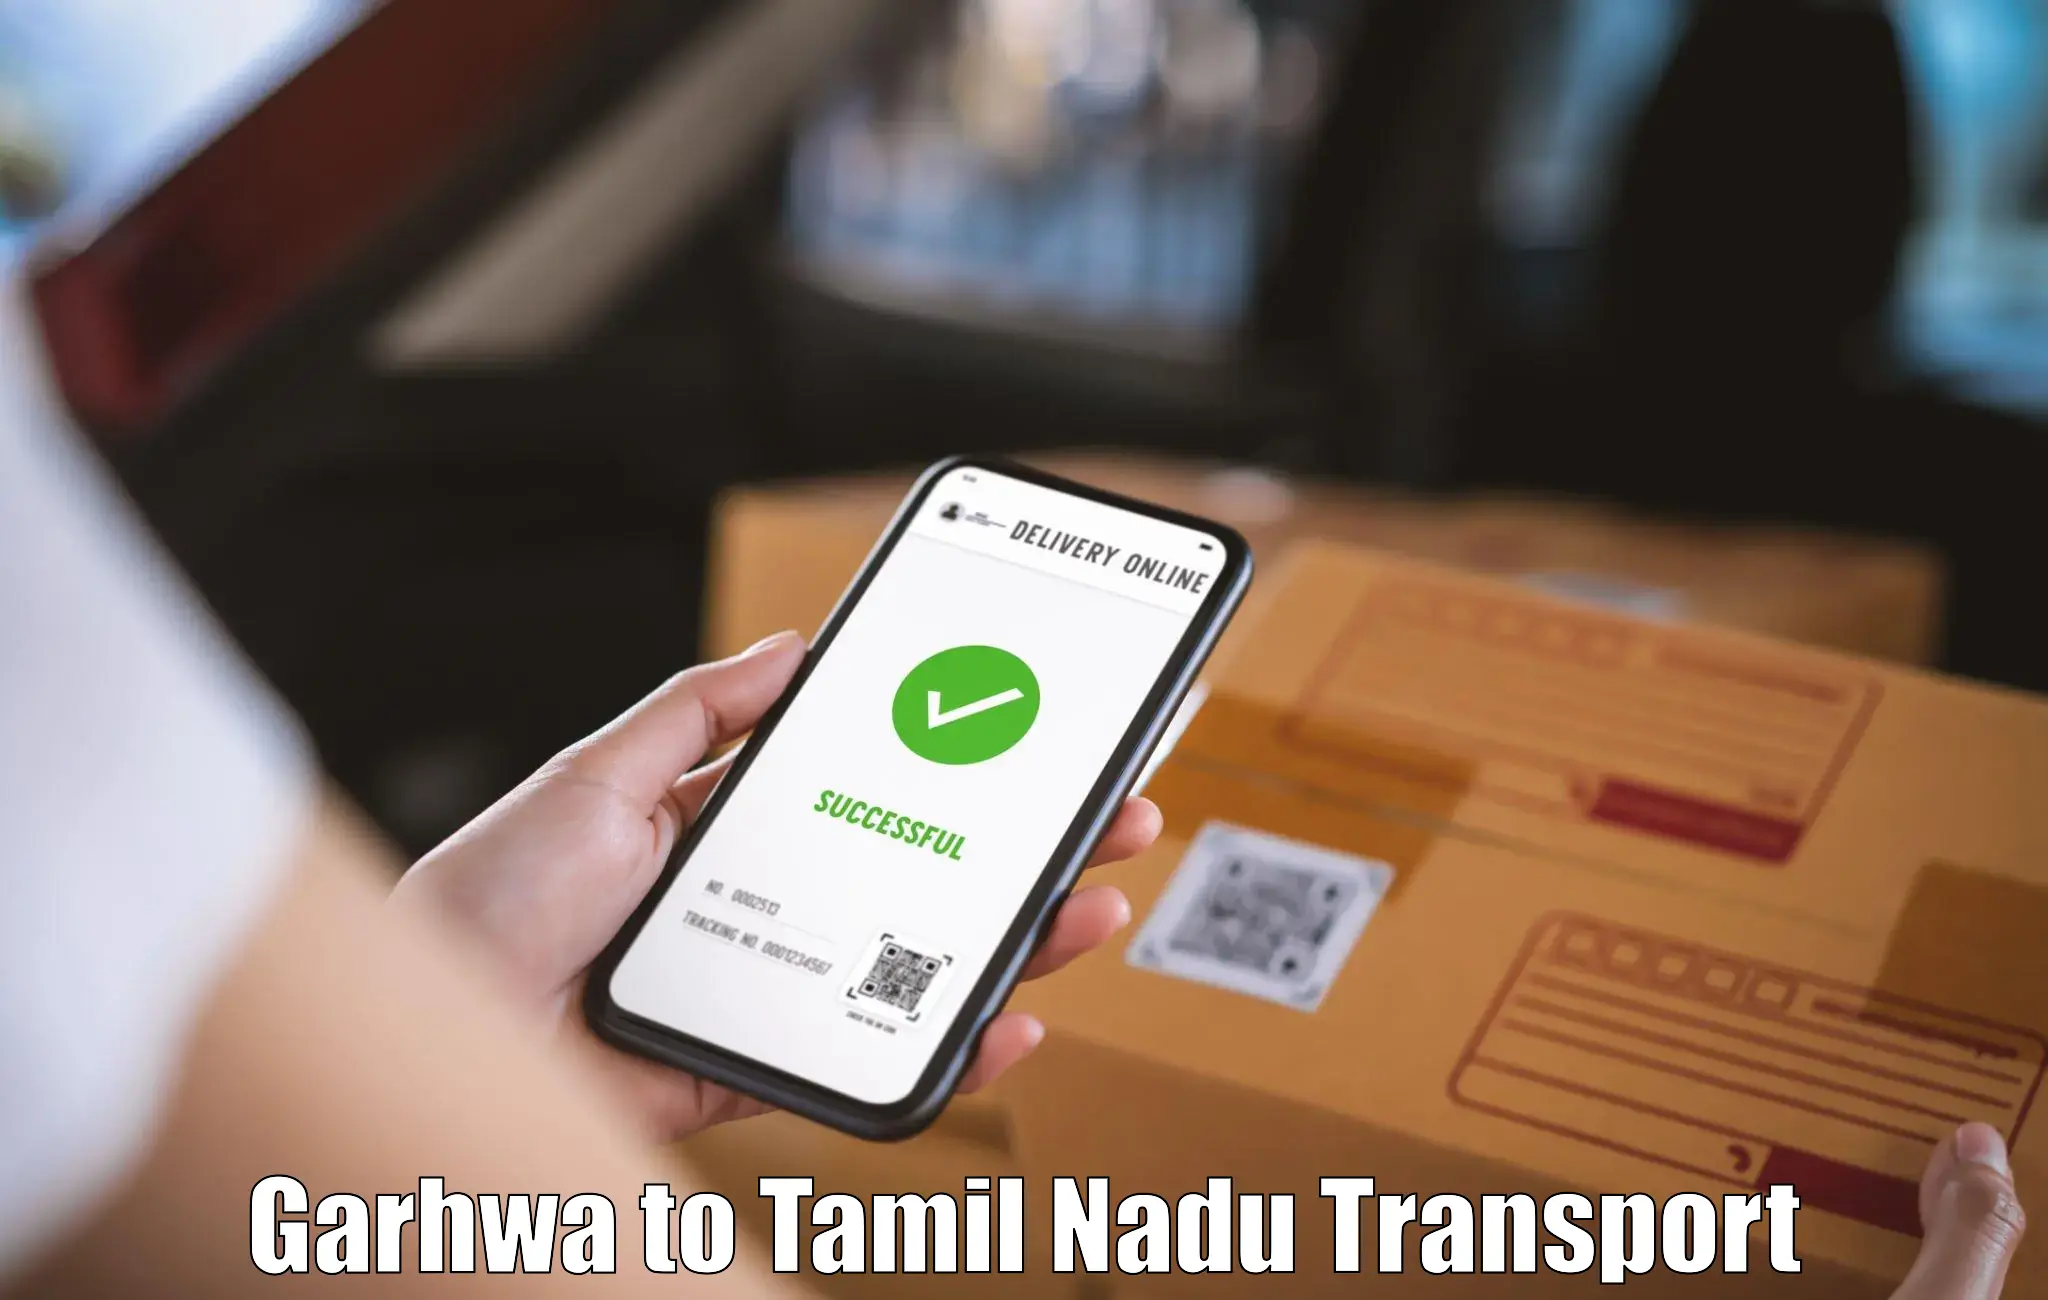 Road transport online services Garhwa to Tamil Nadu